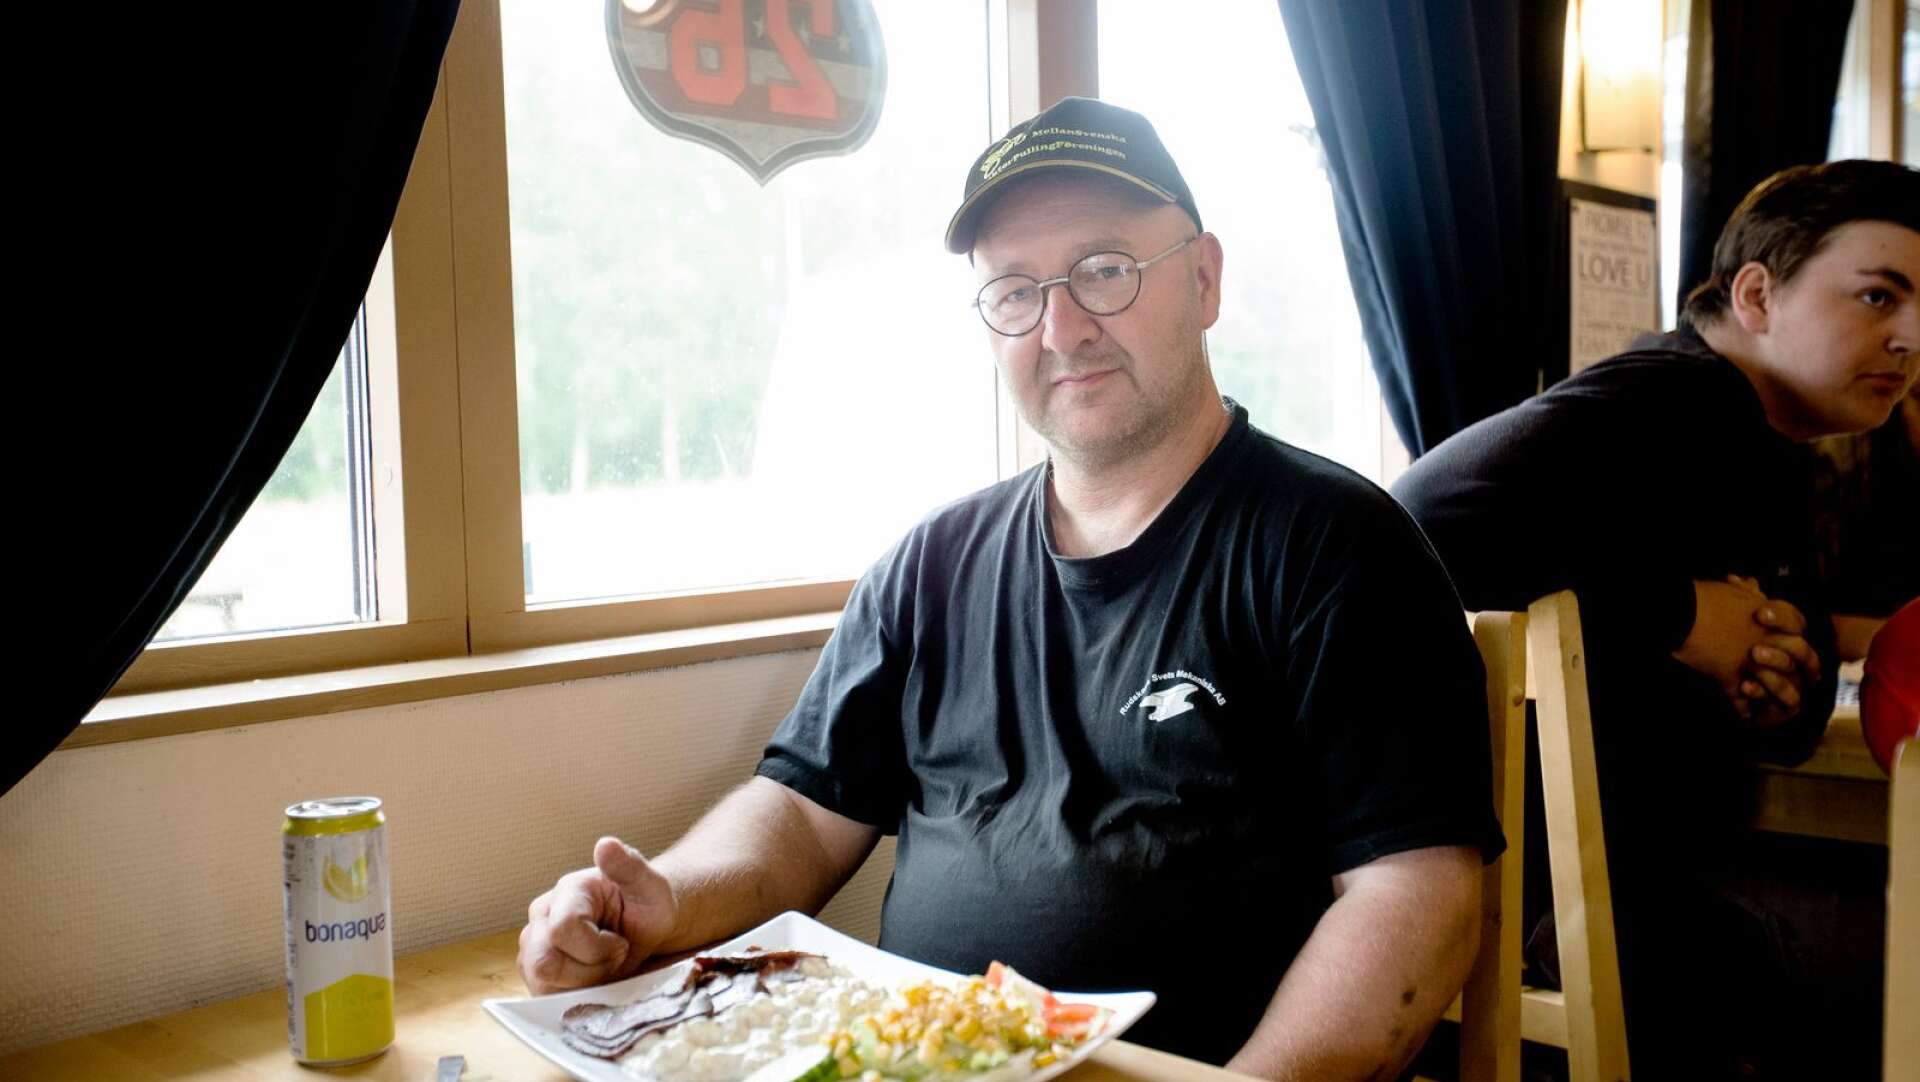 Daniel Turesson från Rudskoga brukar besöka Diner 26 i Nybble ungefär en gång i veckan.